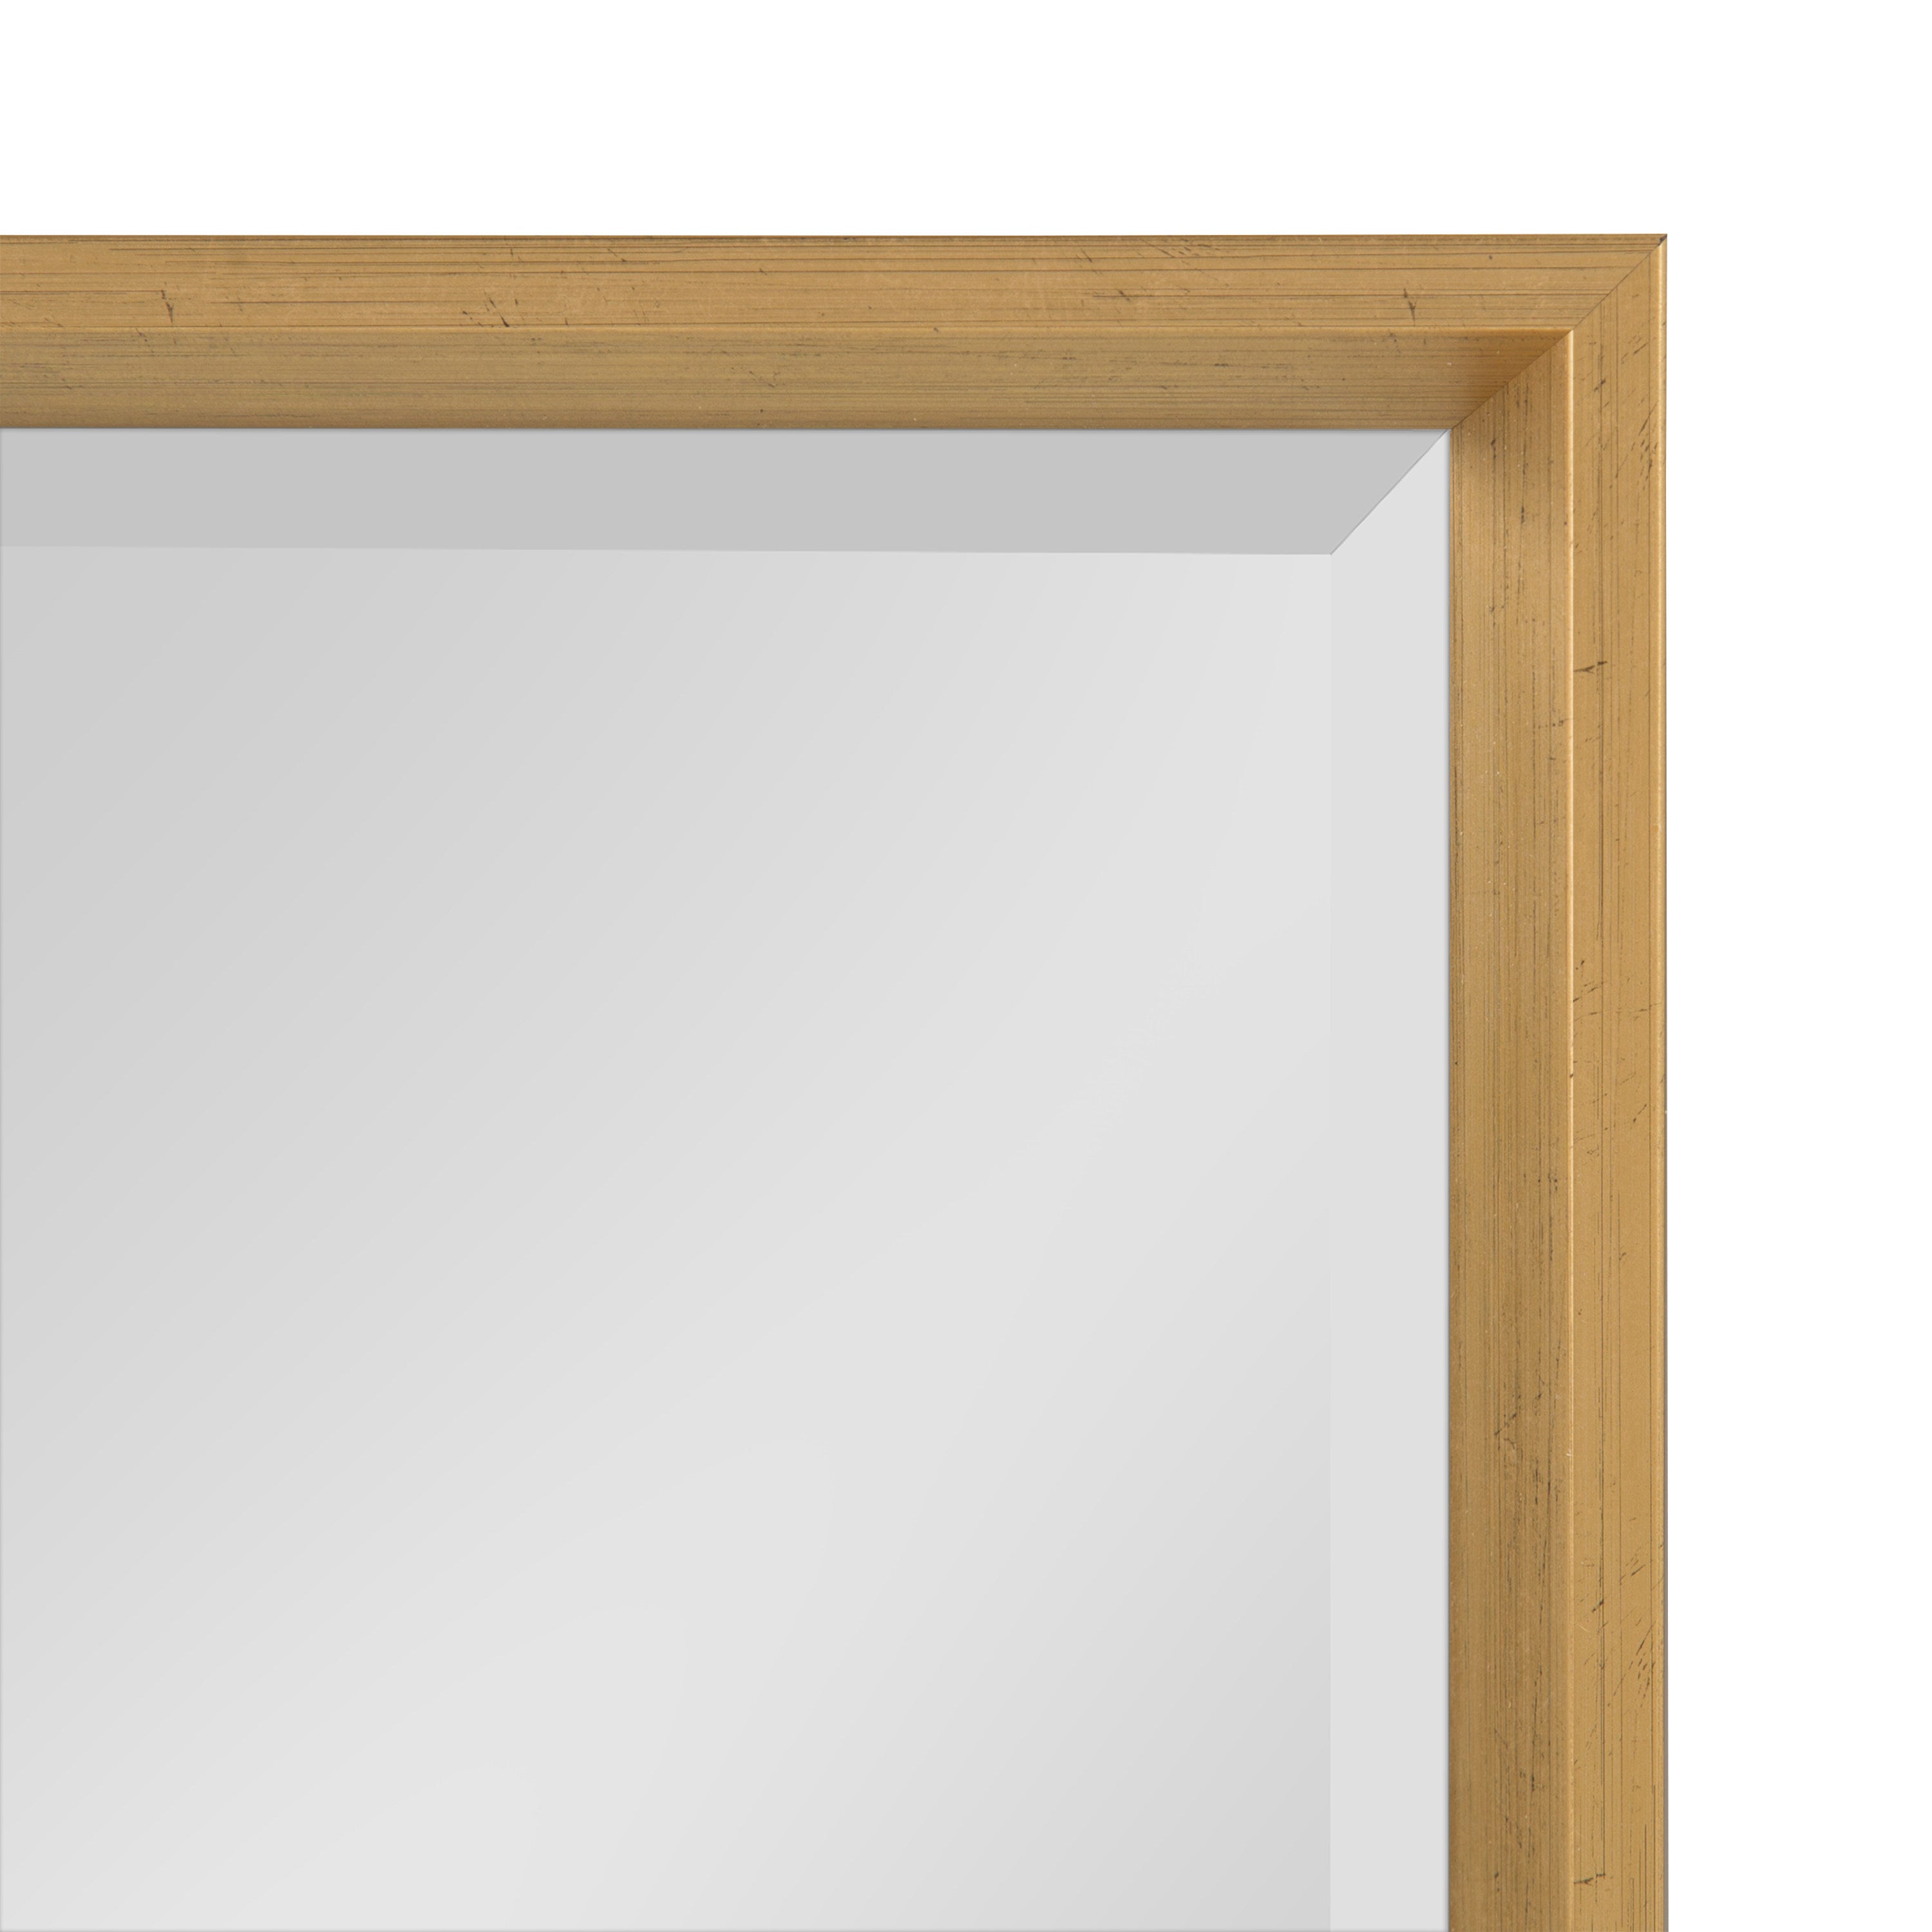 Calter Framed Wall Mirror